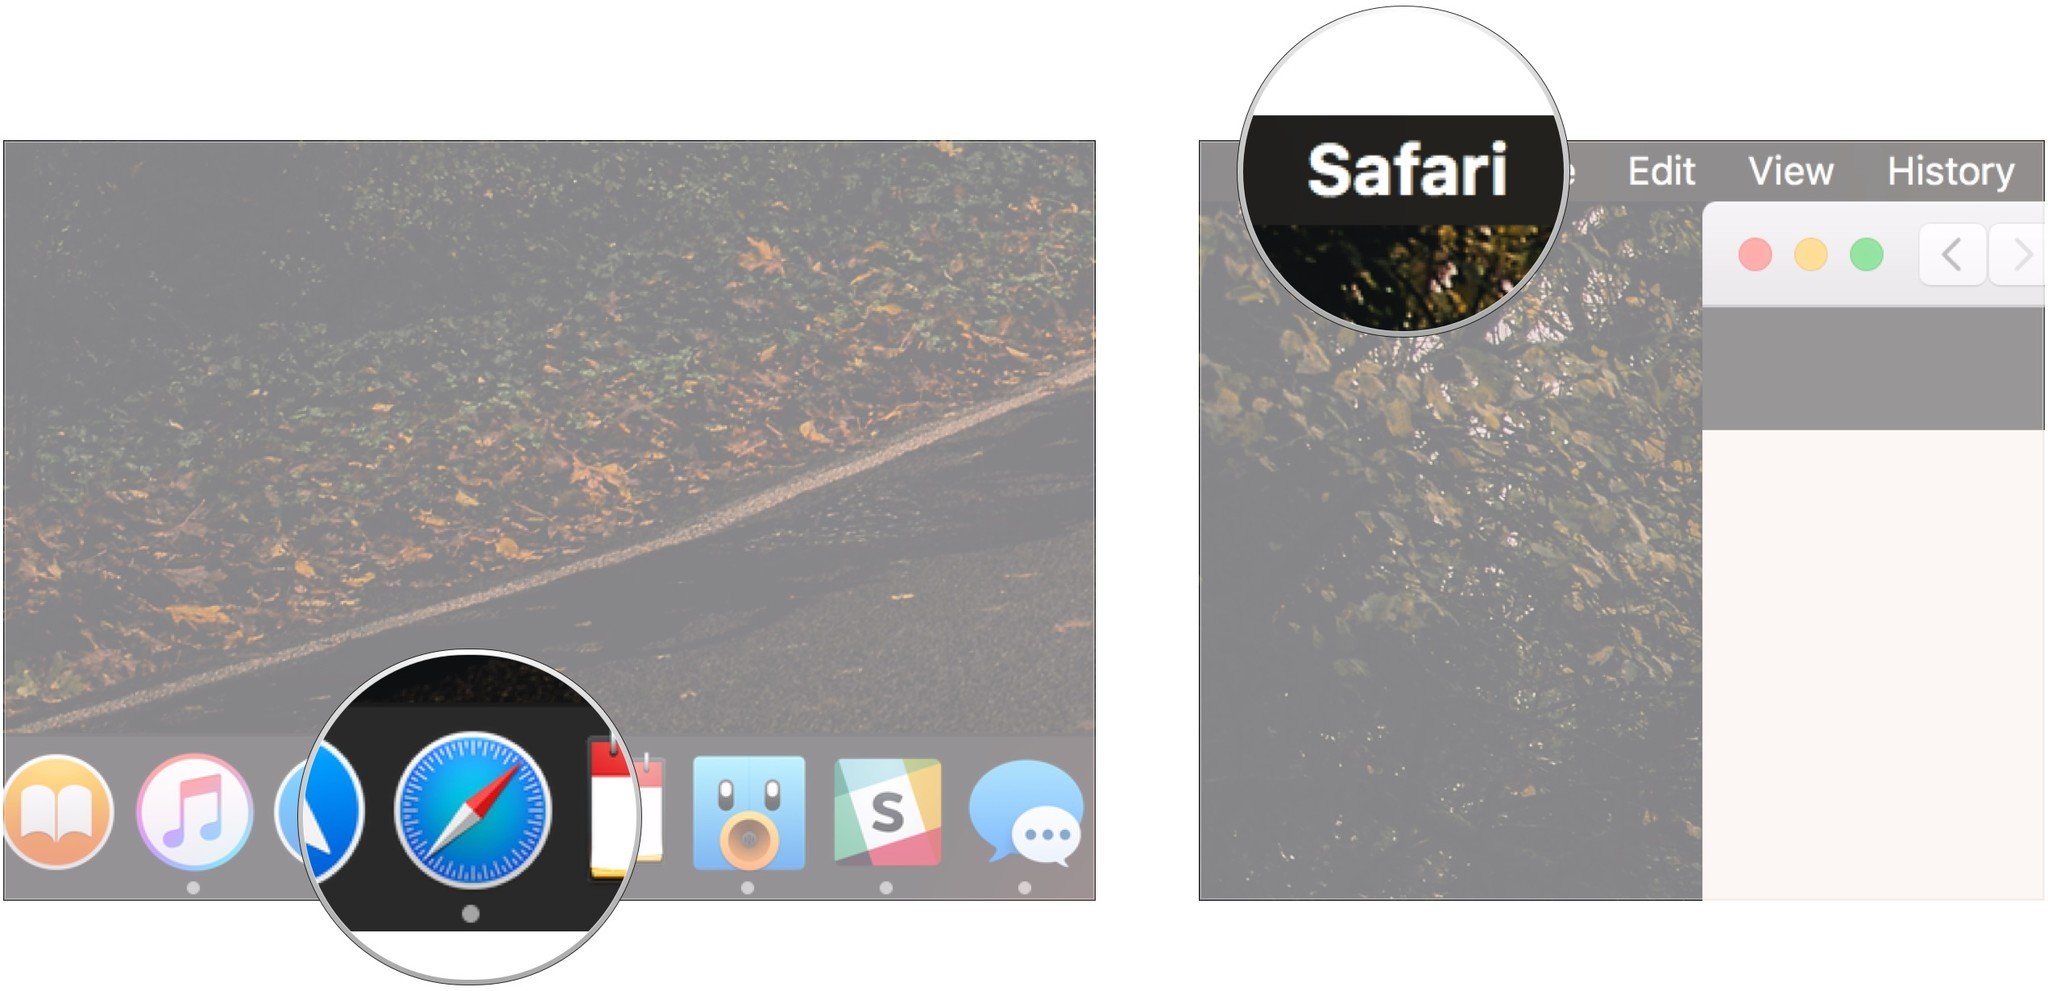 Open Safari, click on Safari